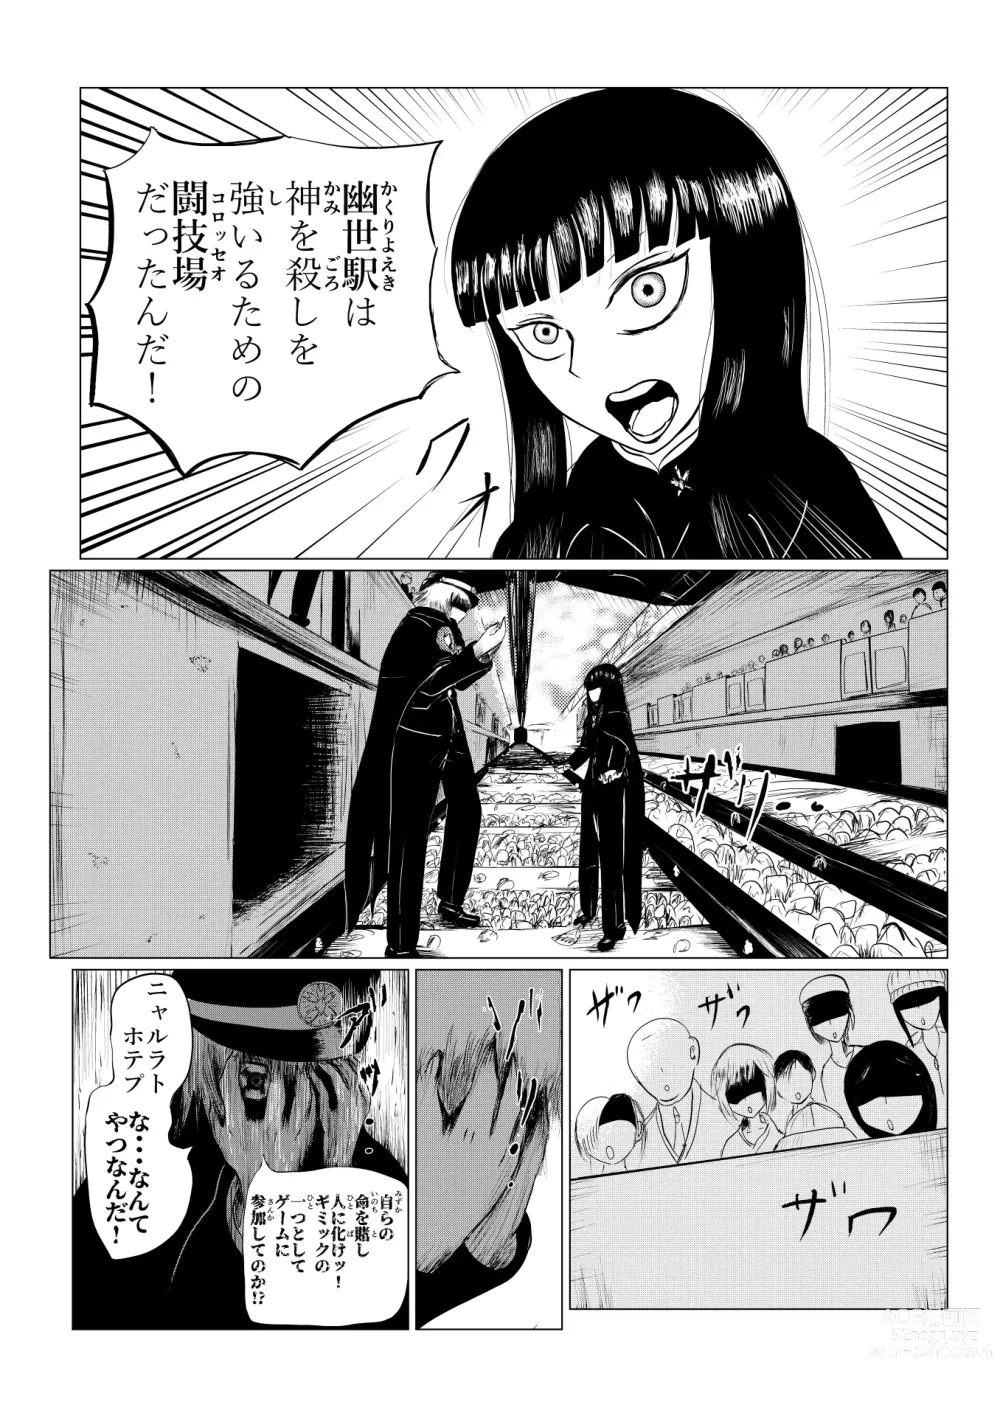 Page 206 of doujinshi HYPE-C Kutourufu Shinwa Musou Roku